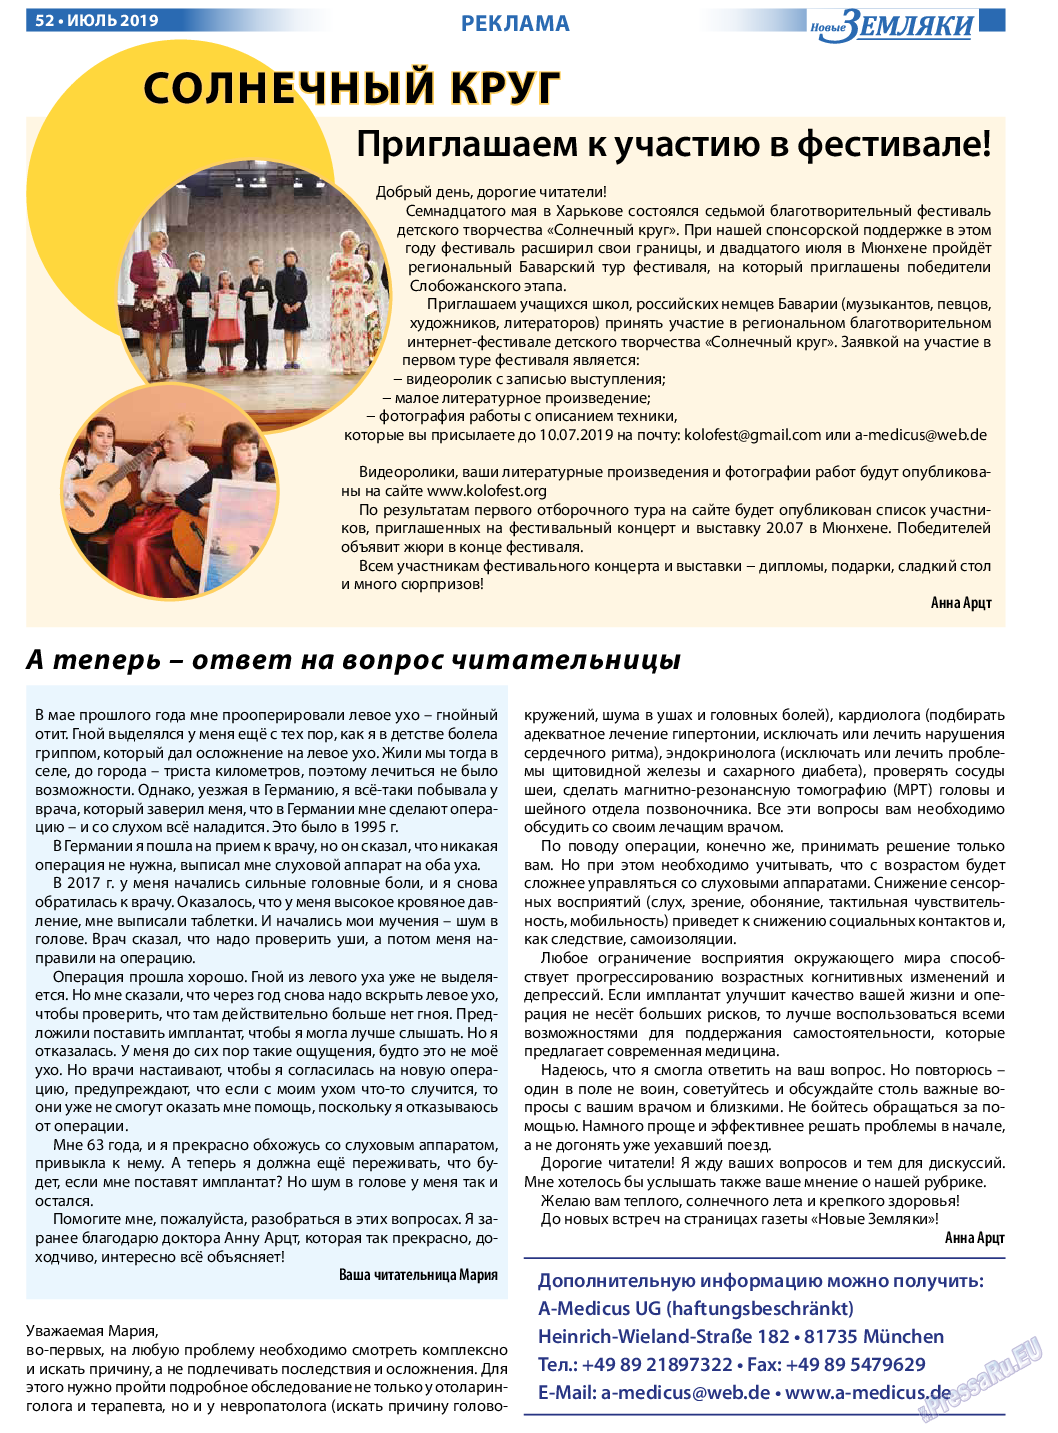 Новые Земляки (газета). 2019 год, номер 7, стр. 52